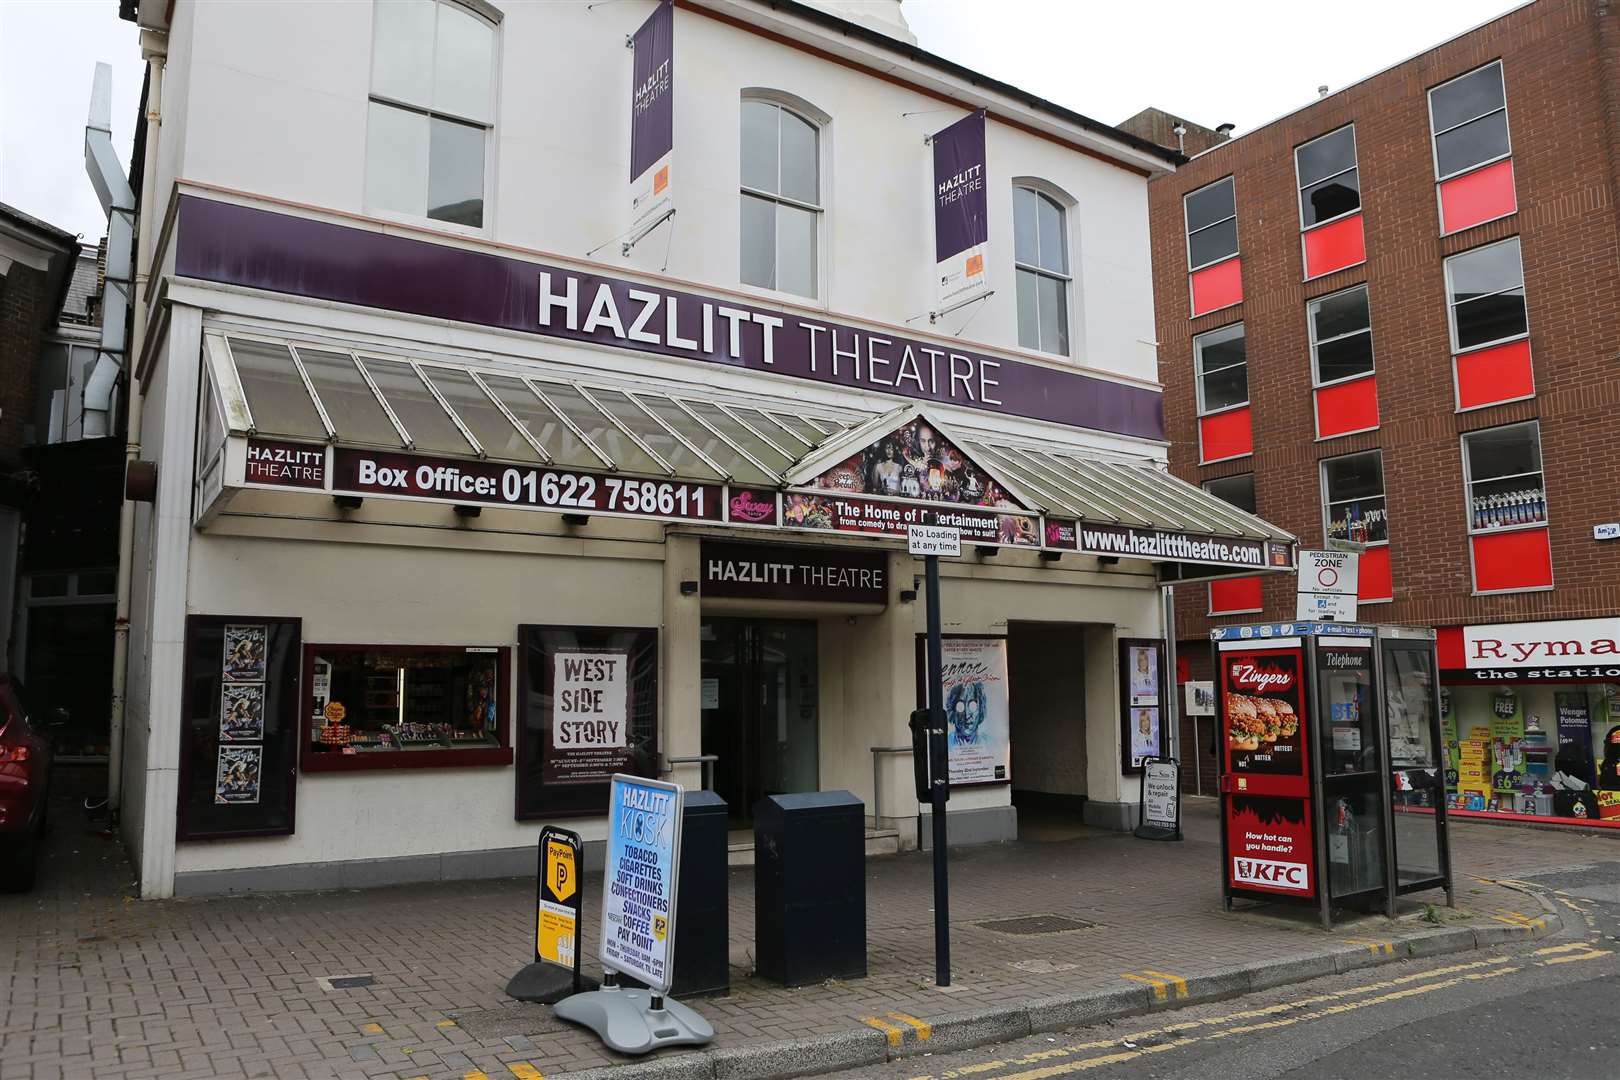 The Hazlitt could re-open soon